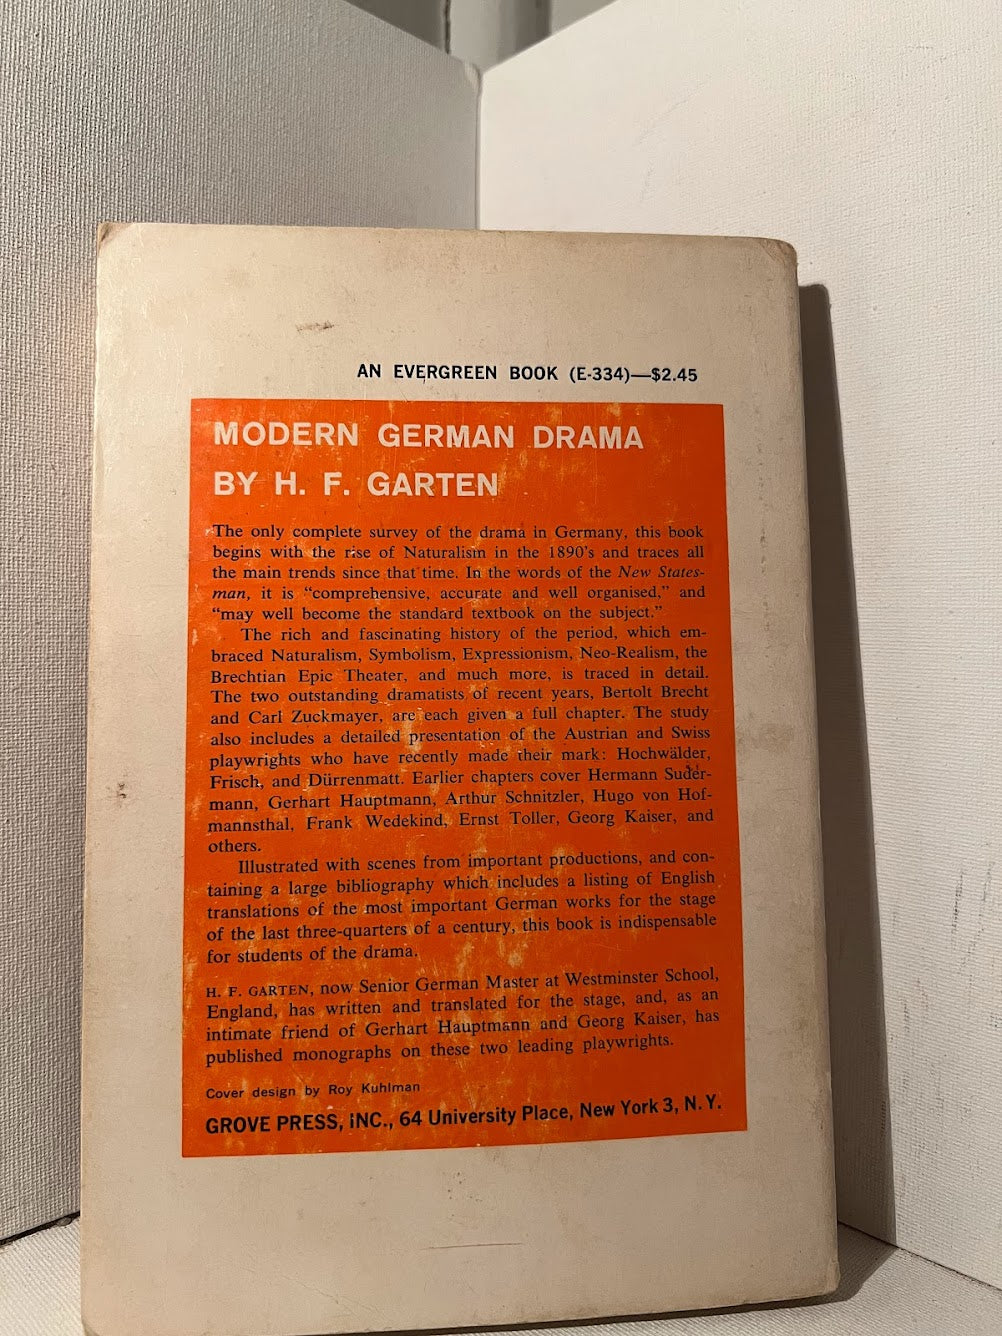 Modern German Drama by H.F. Garten